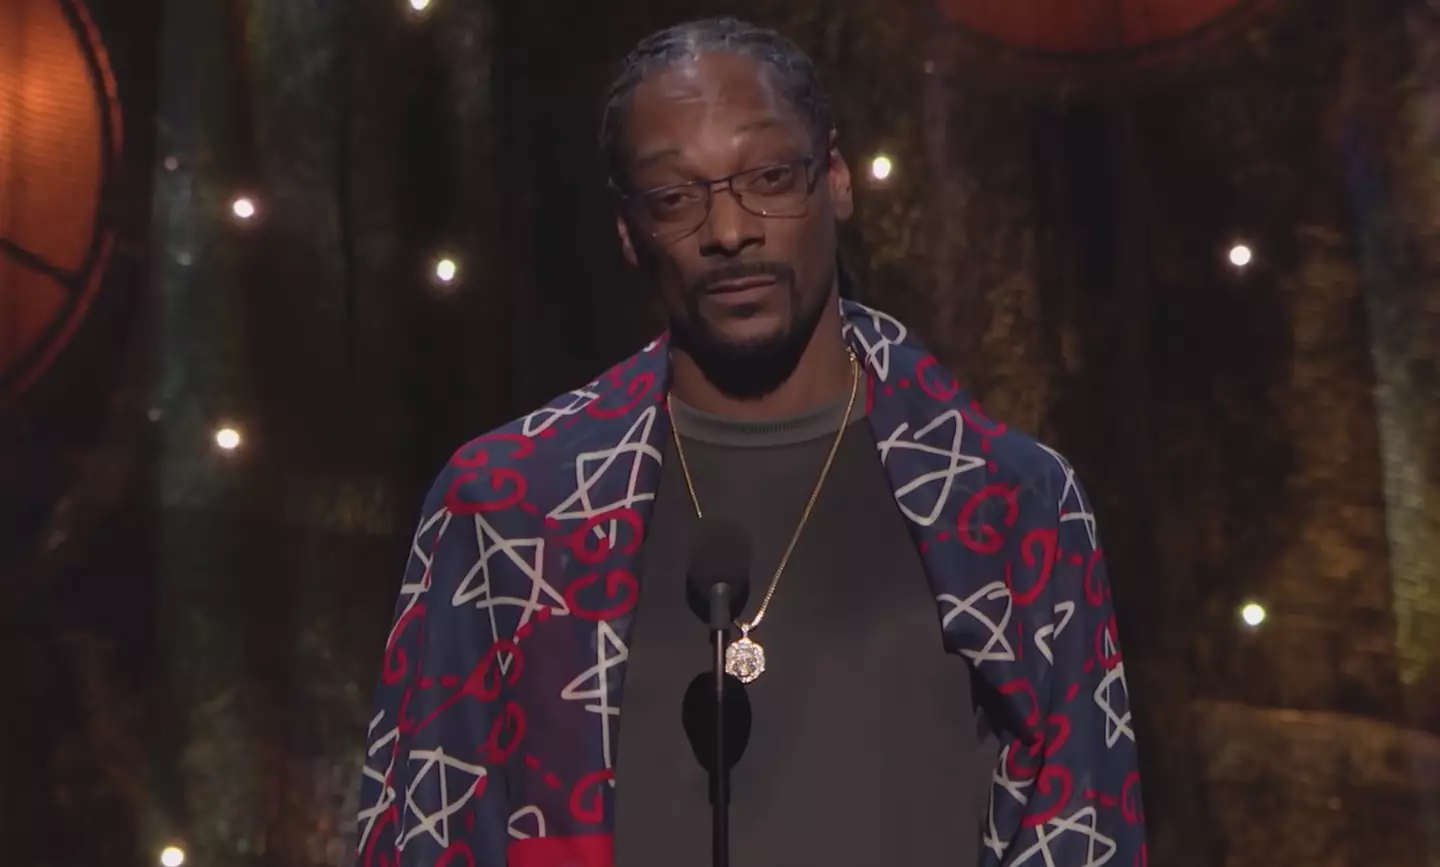 Snoop revealed that Tupac Shakur put him on 'smoking blunts'.